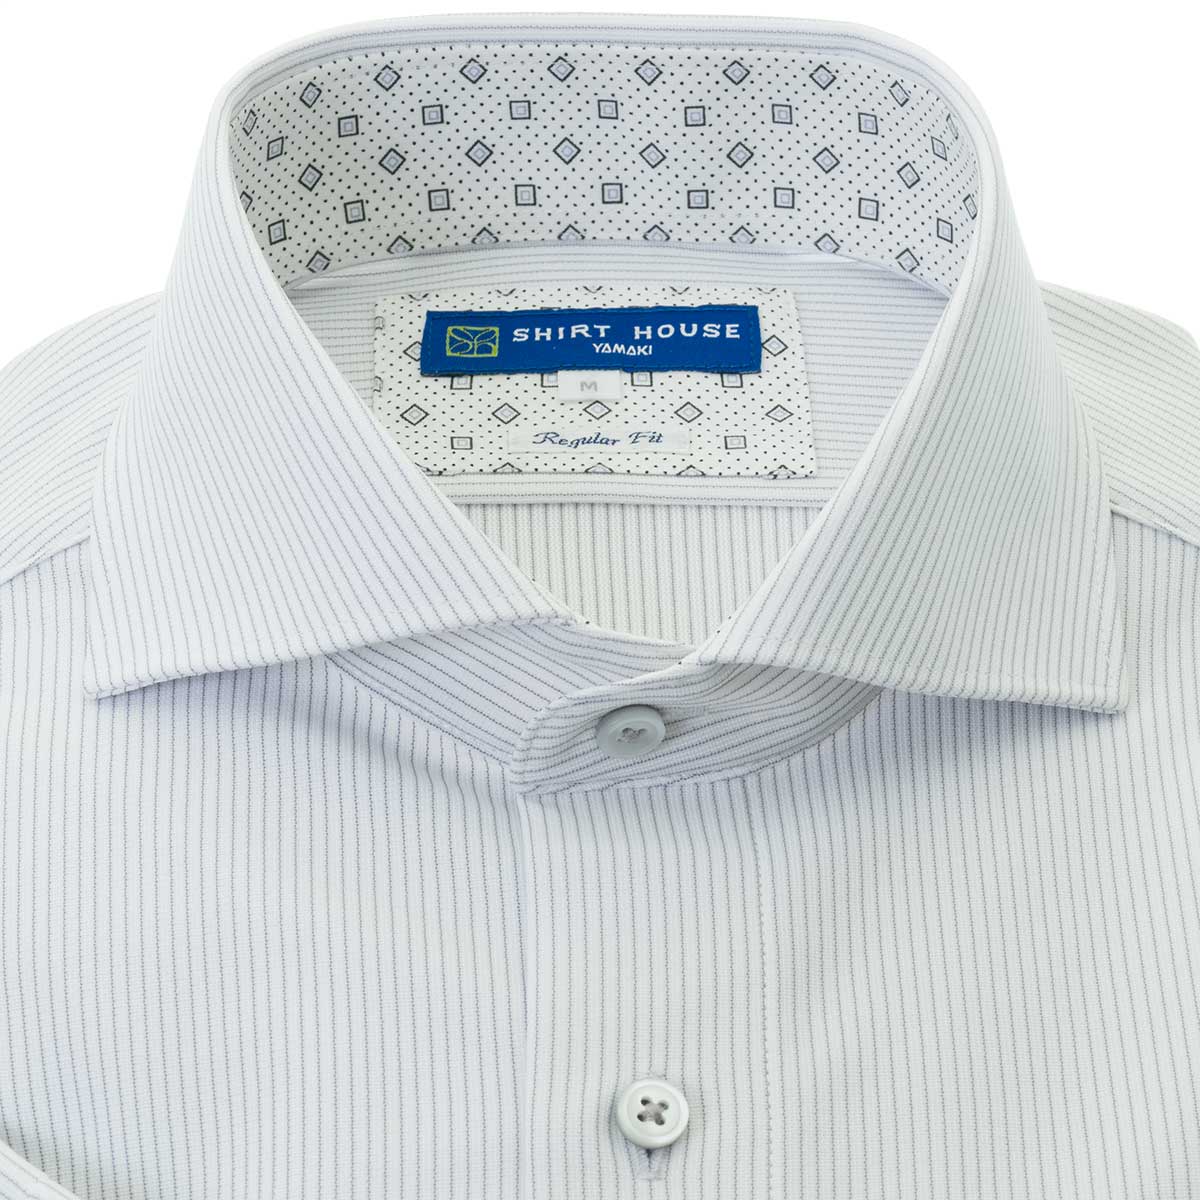 SHIRT HOUSE・ブルーレーベル 半袖 ニットシャツ(裄詰不可)カッタウェイ グレー ワイシャツ